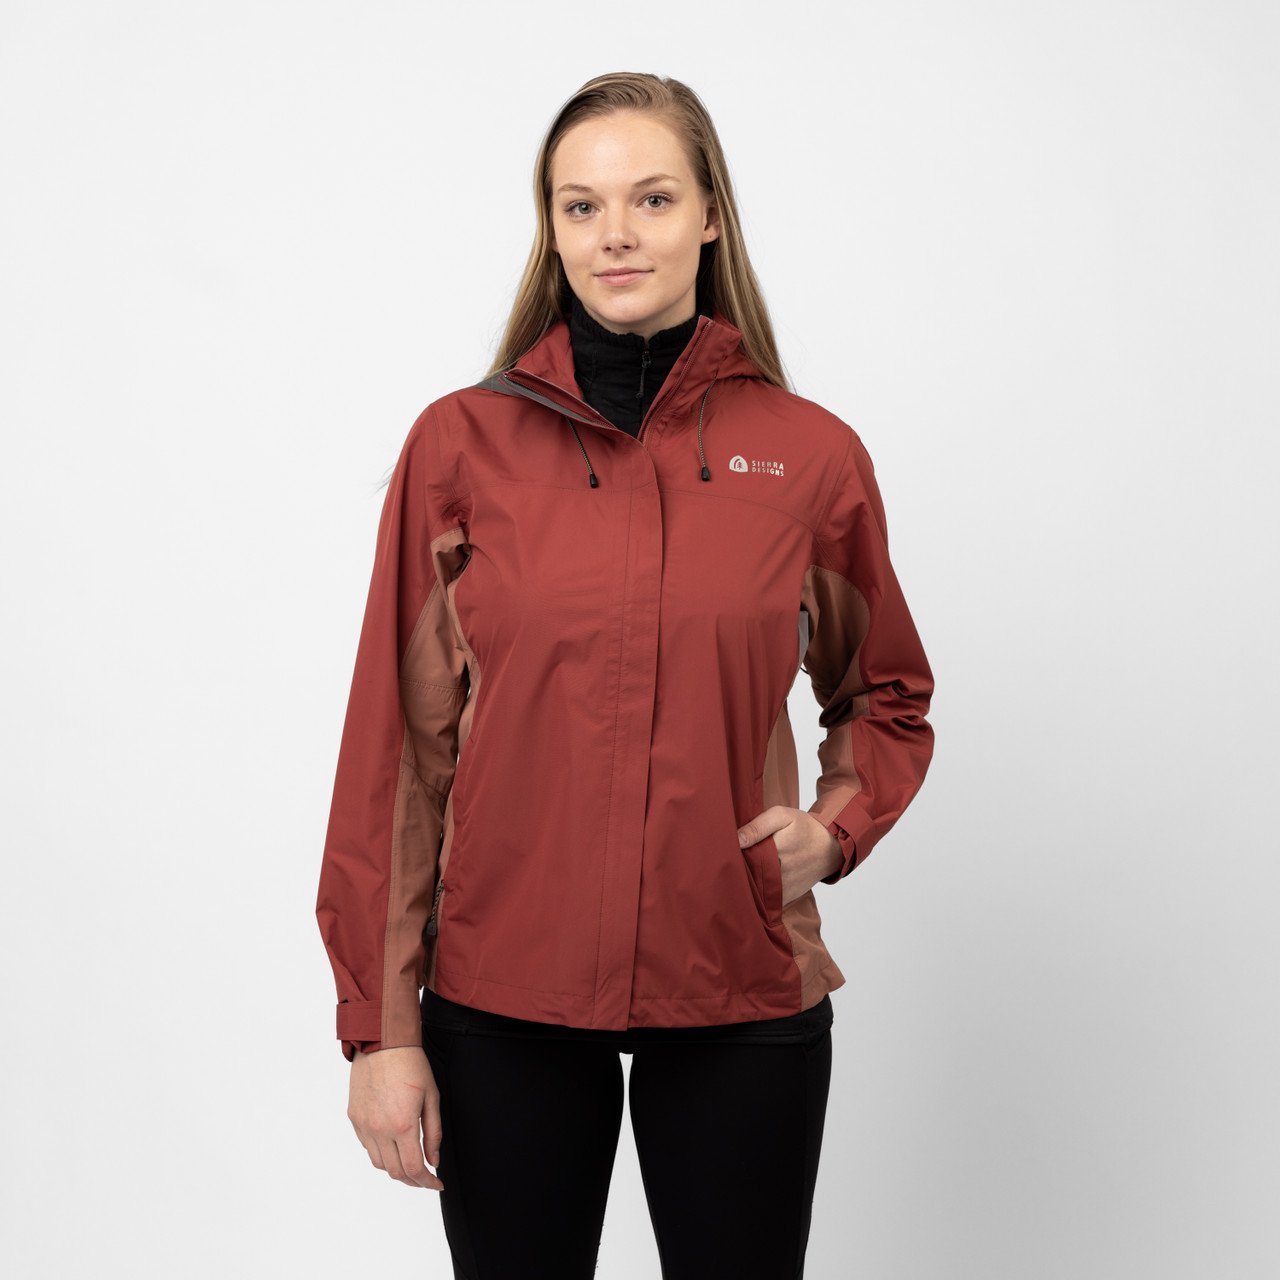 Sierra Designs Women's Hurricane Rain Jacket in Rosewood/Cedar Wood, Size Small